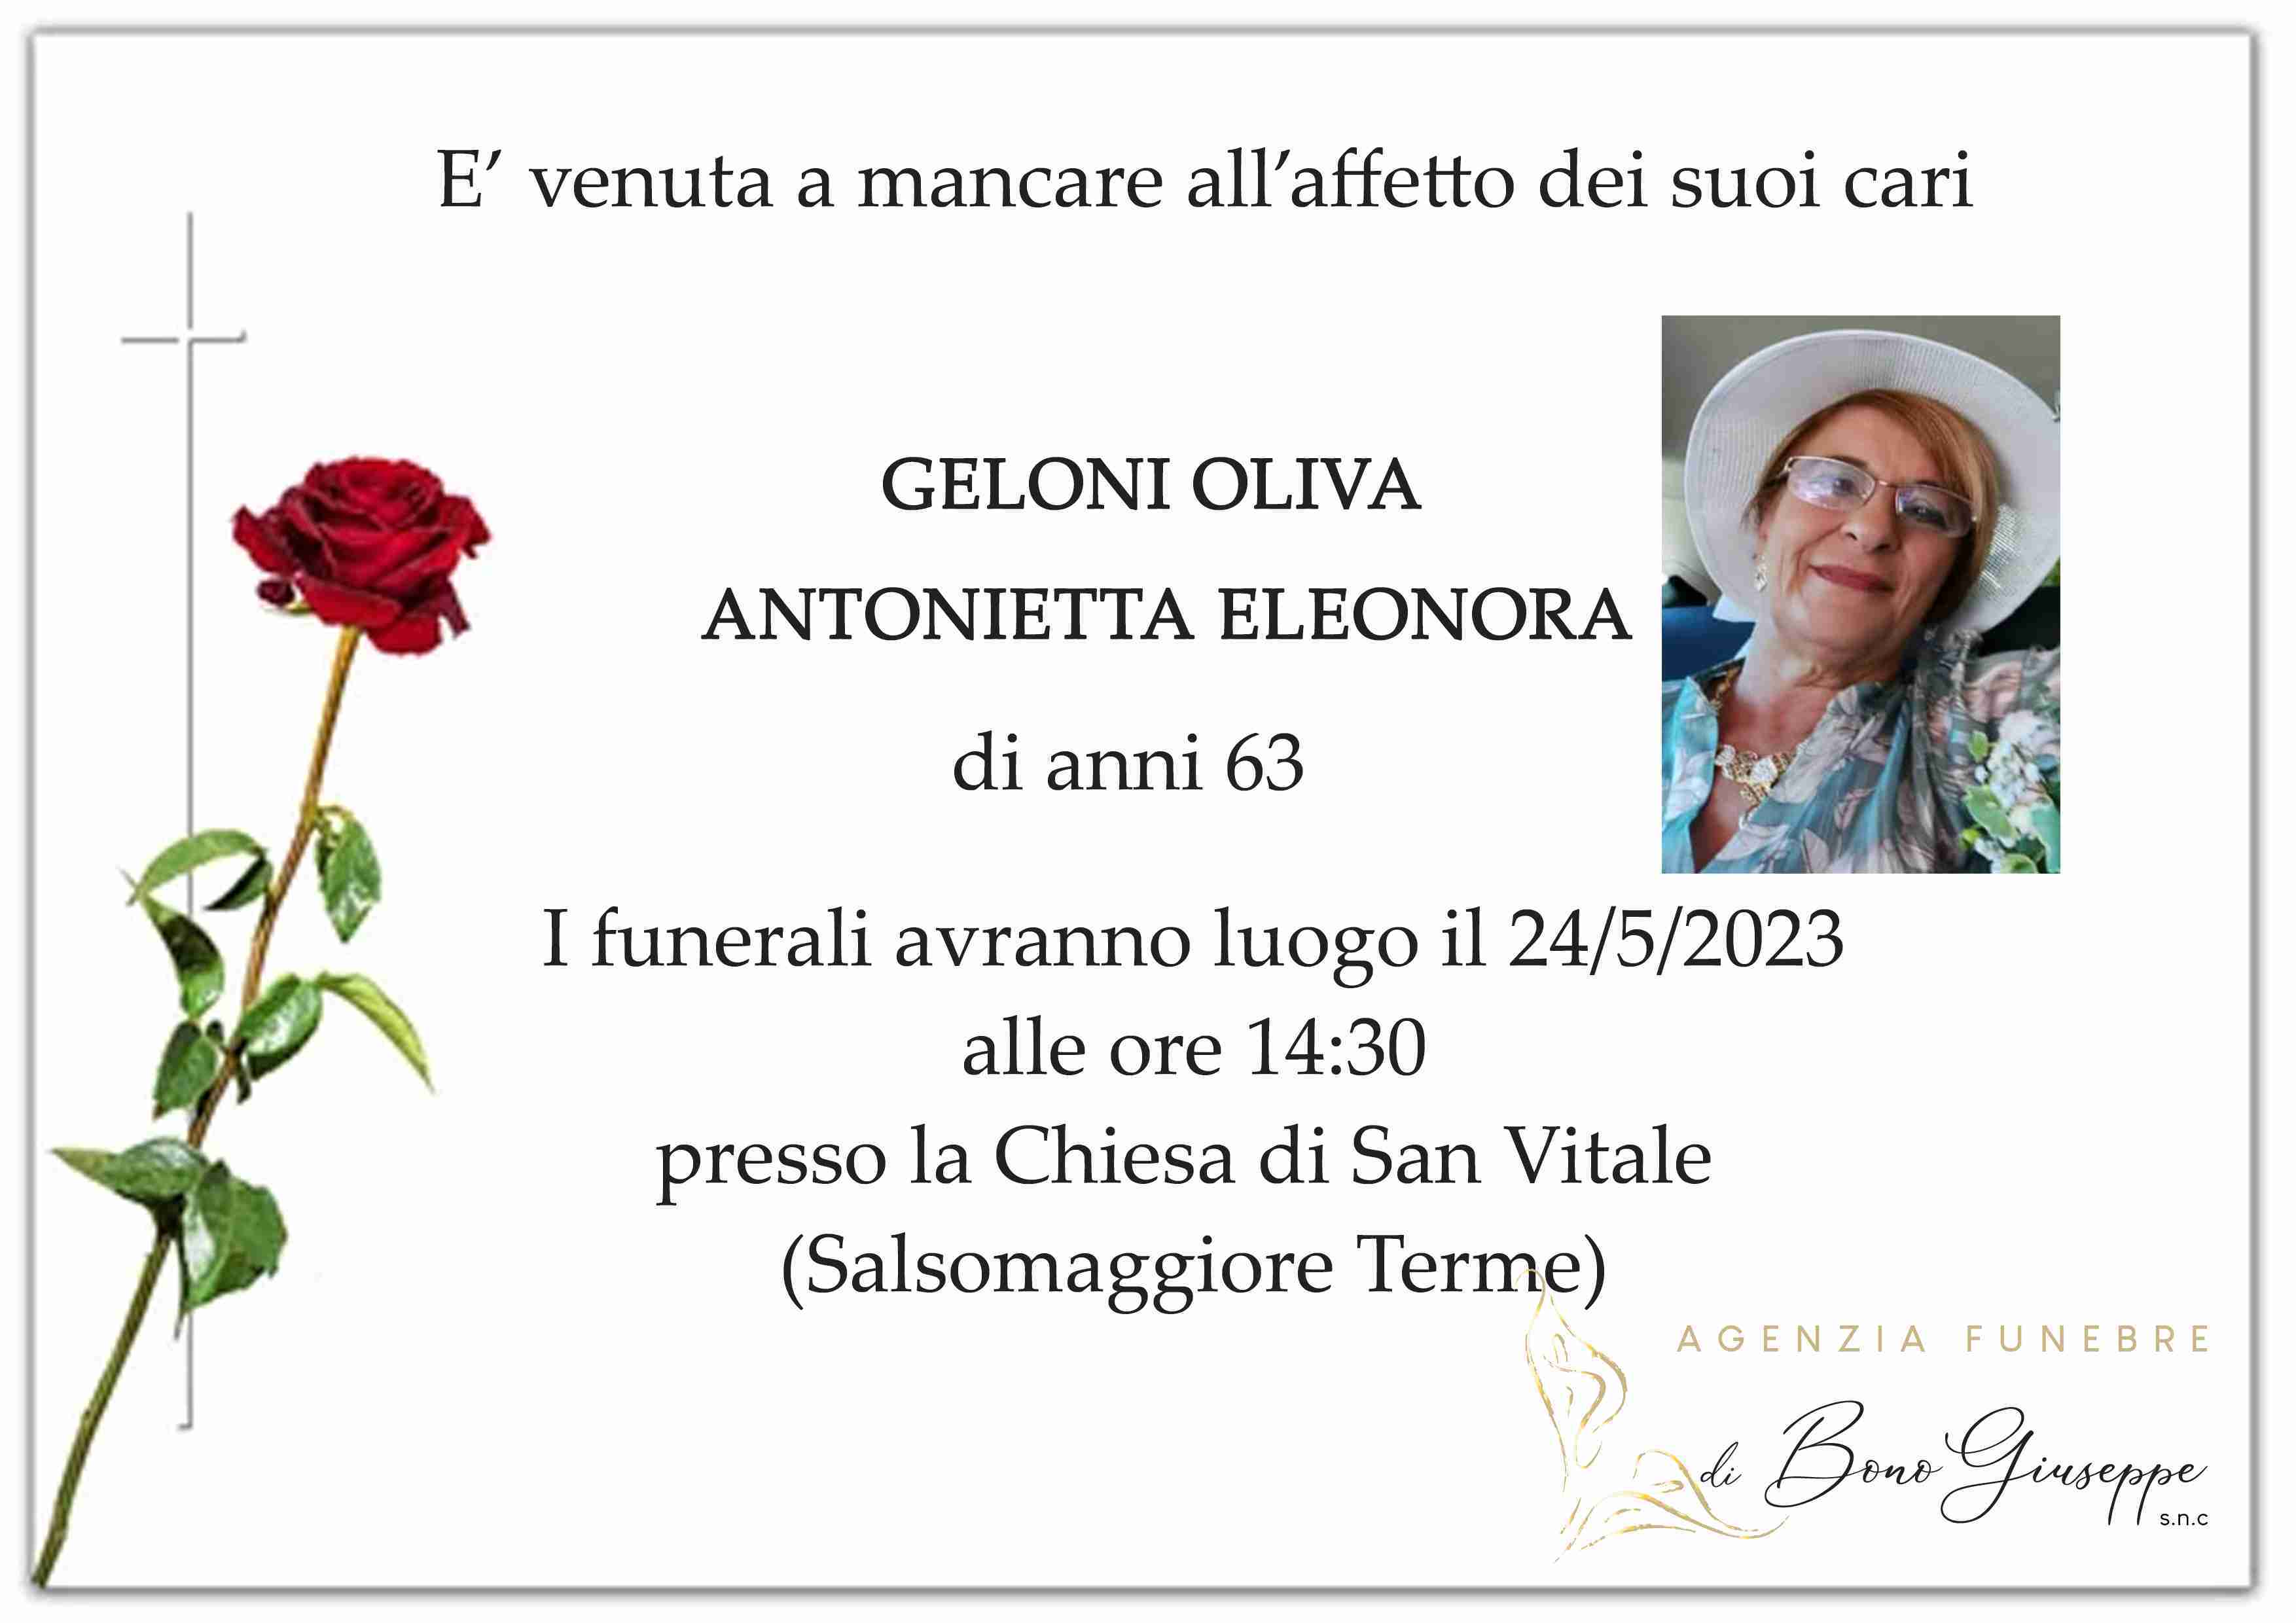 Antonietta Eleonora Geloni Oliva